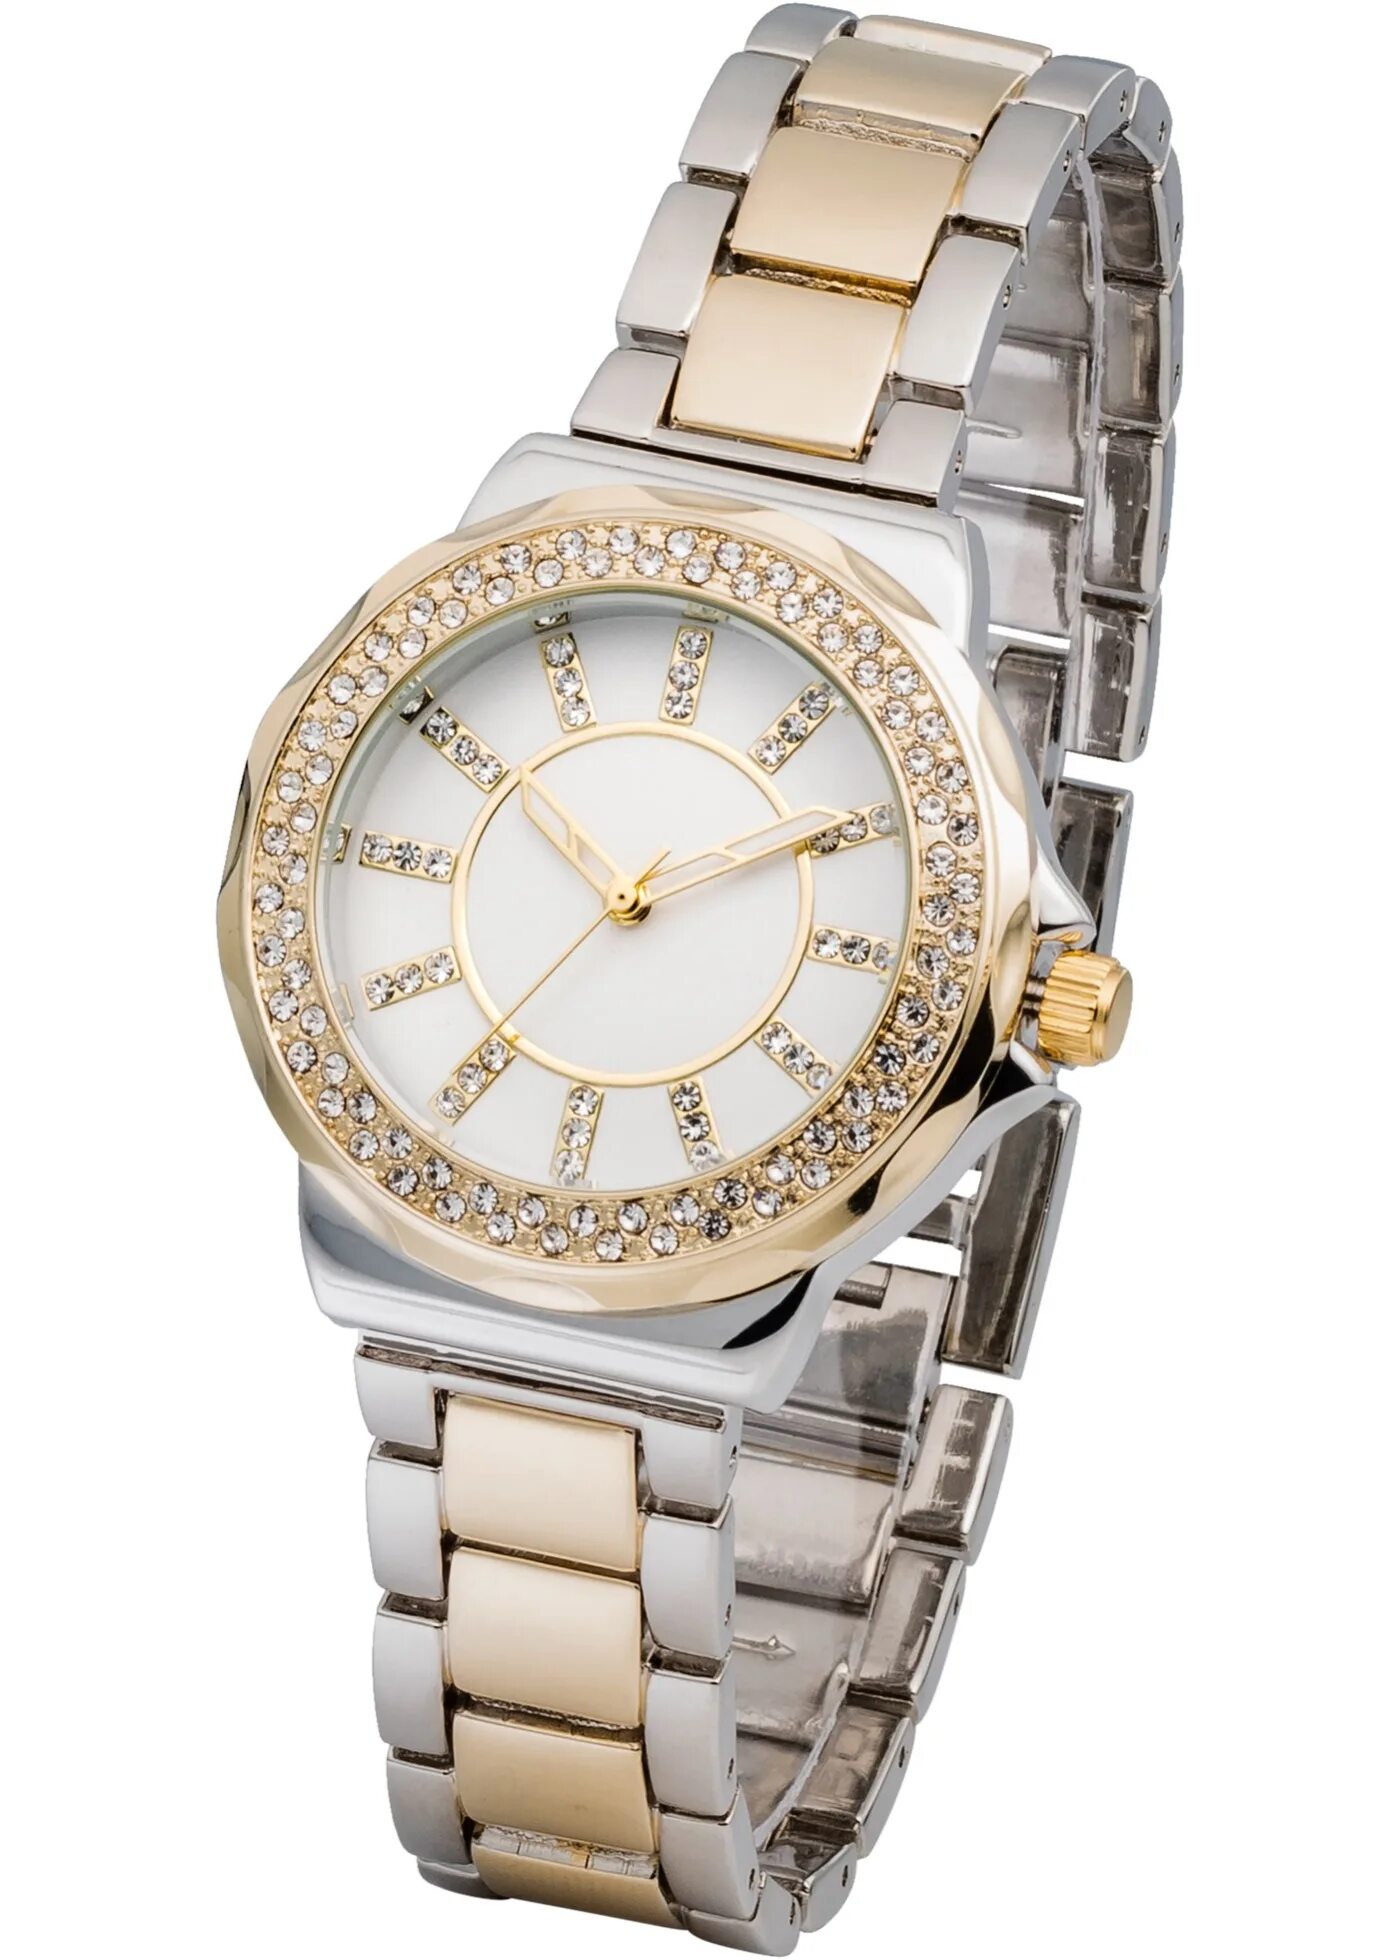 Недорогие наручные часы озон. Часы наручные женские КСМ 5207. Adis quality m8342 женские часы наручные. Женские часы Swiss collection 6033.